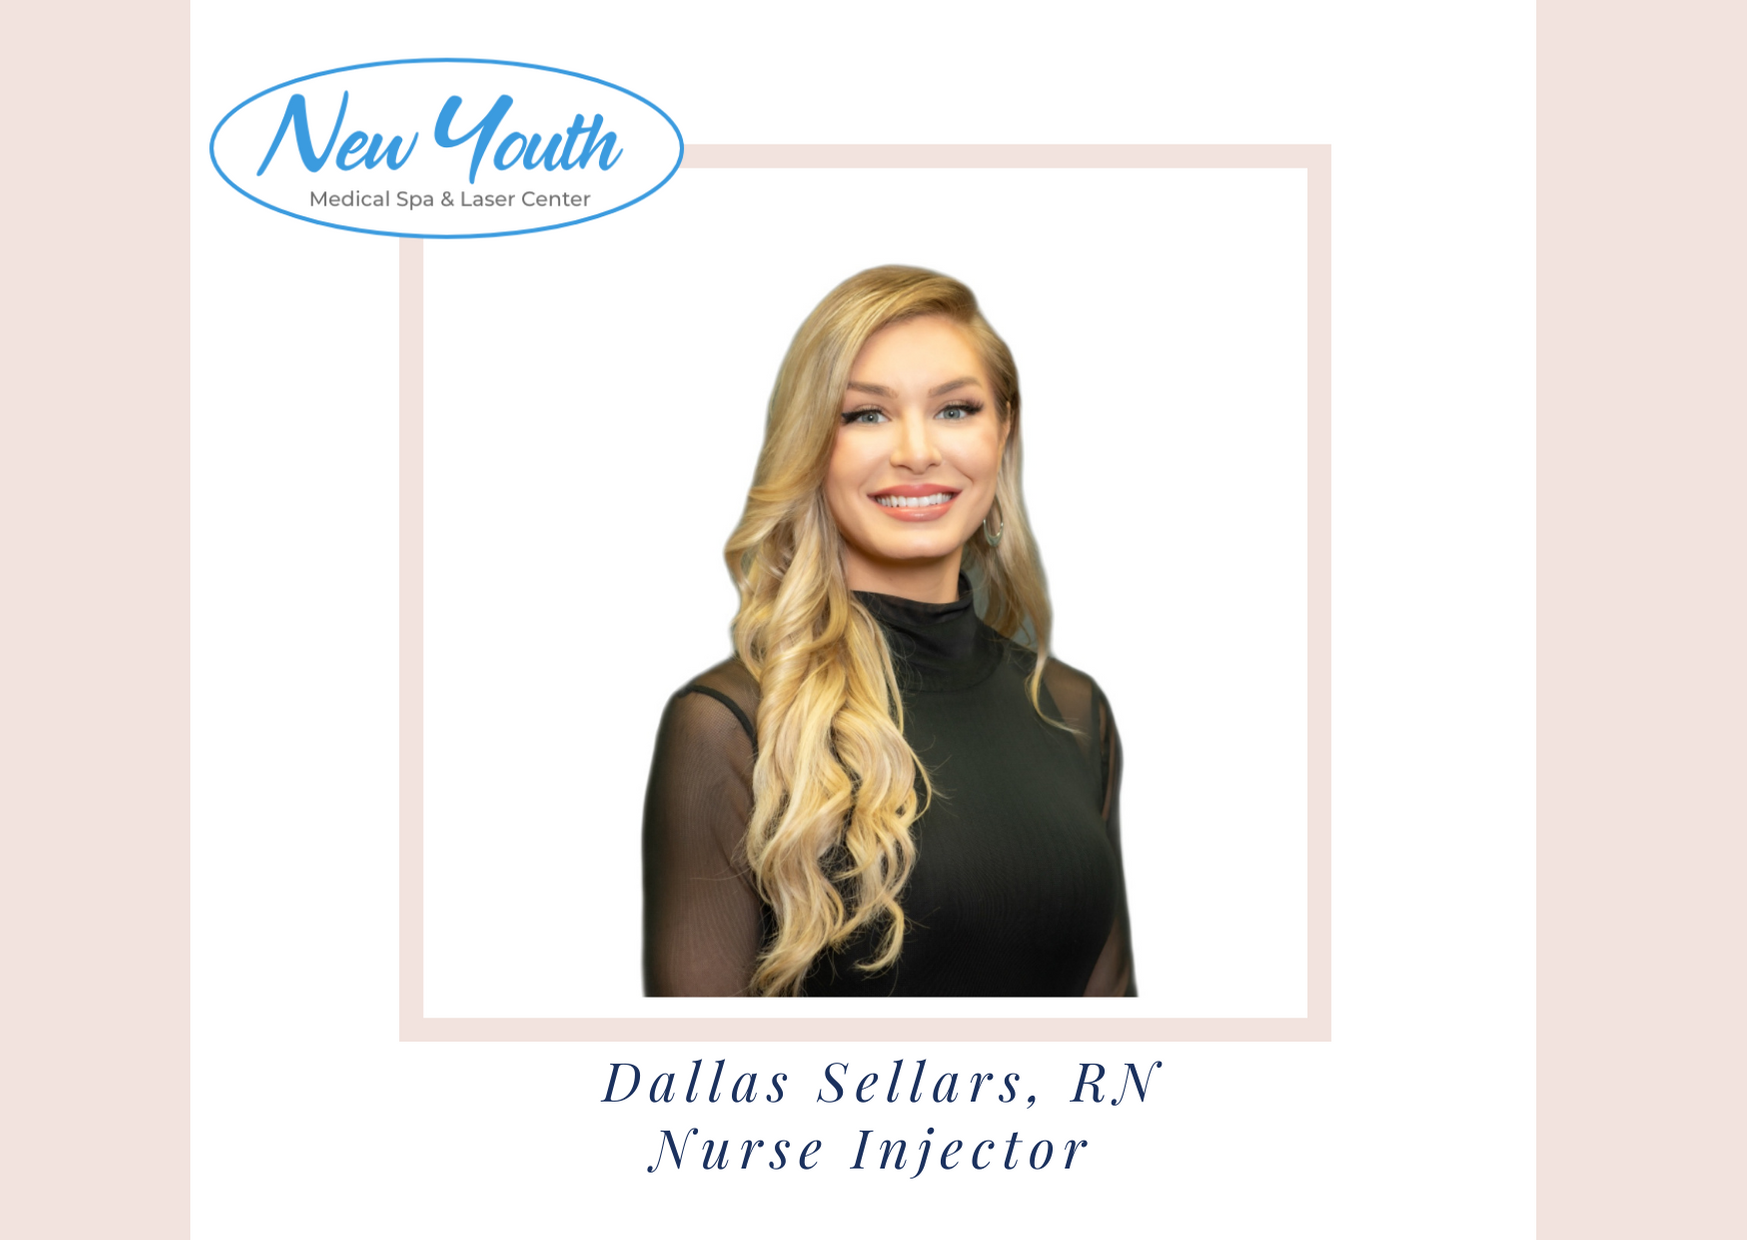 Meet Dallas Sellars our Nurse at New Youth Medical Spa